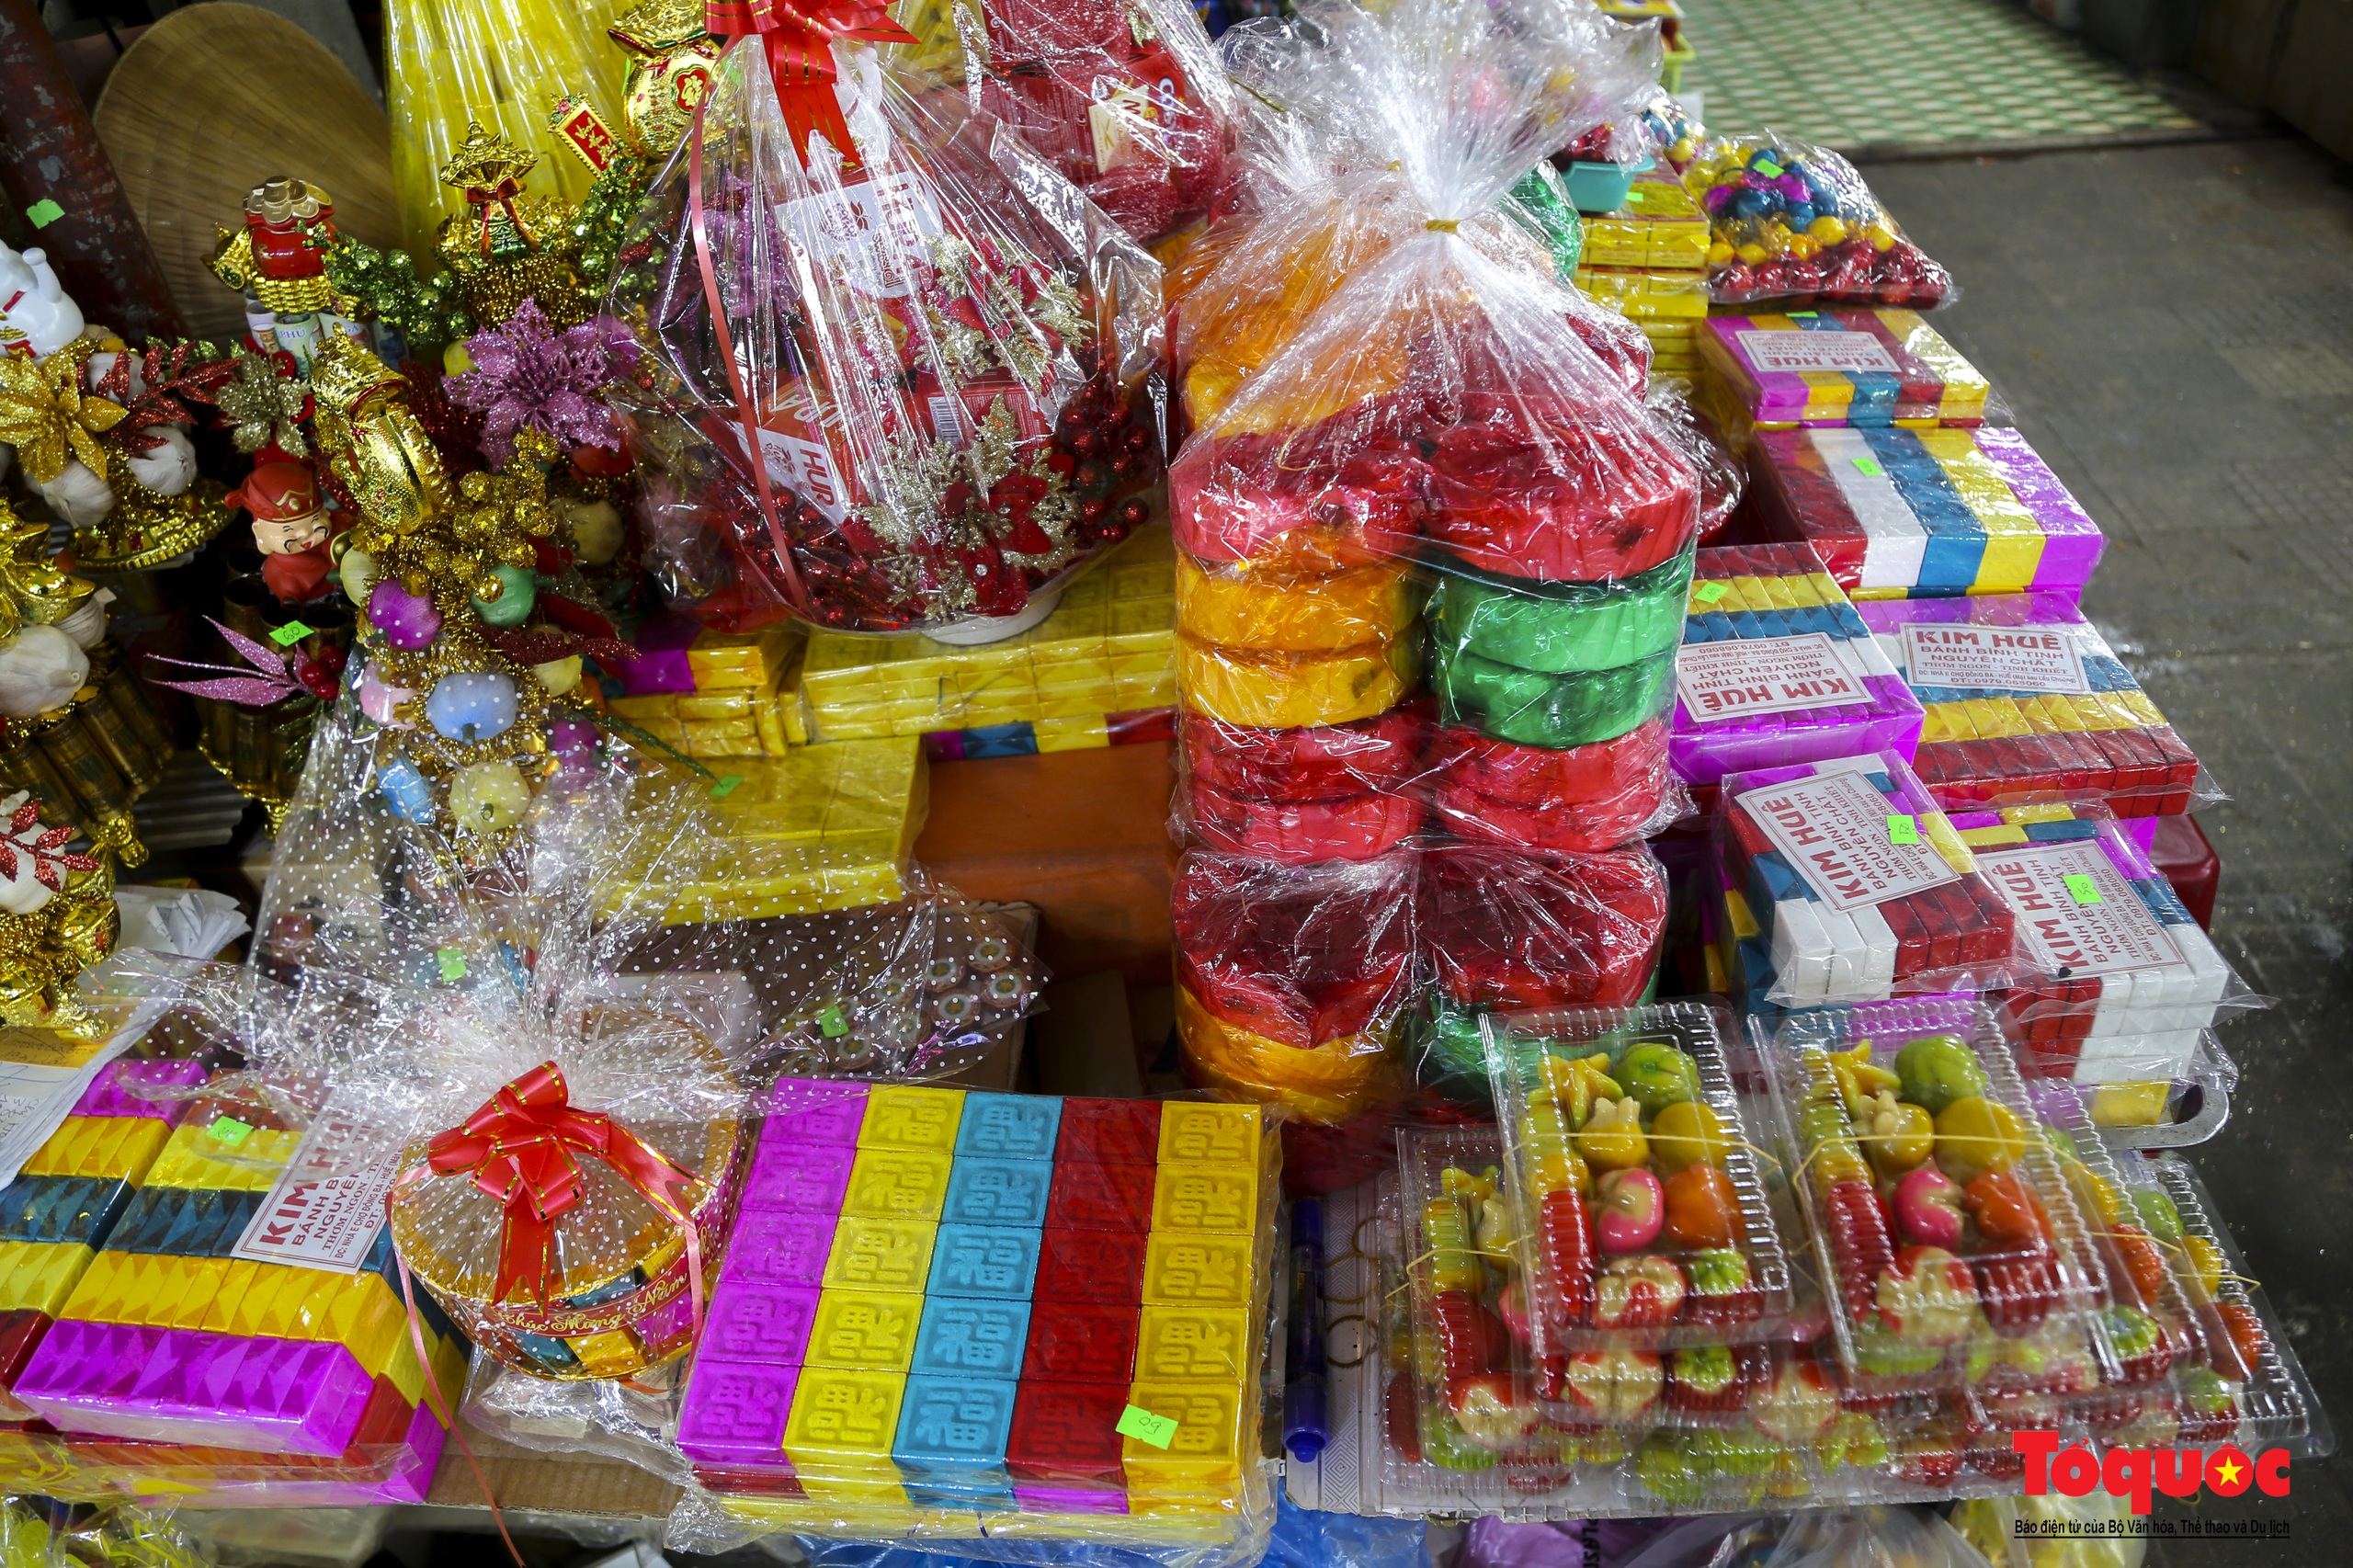 Hàng hóa Tết đa dạng, sức mua tại ngôi chợ nổi tiếng bậc nhất xứ Huế vẫn chưa cao - Ảnh 7.